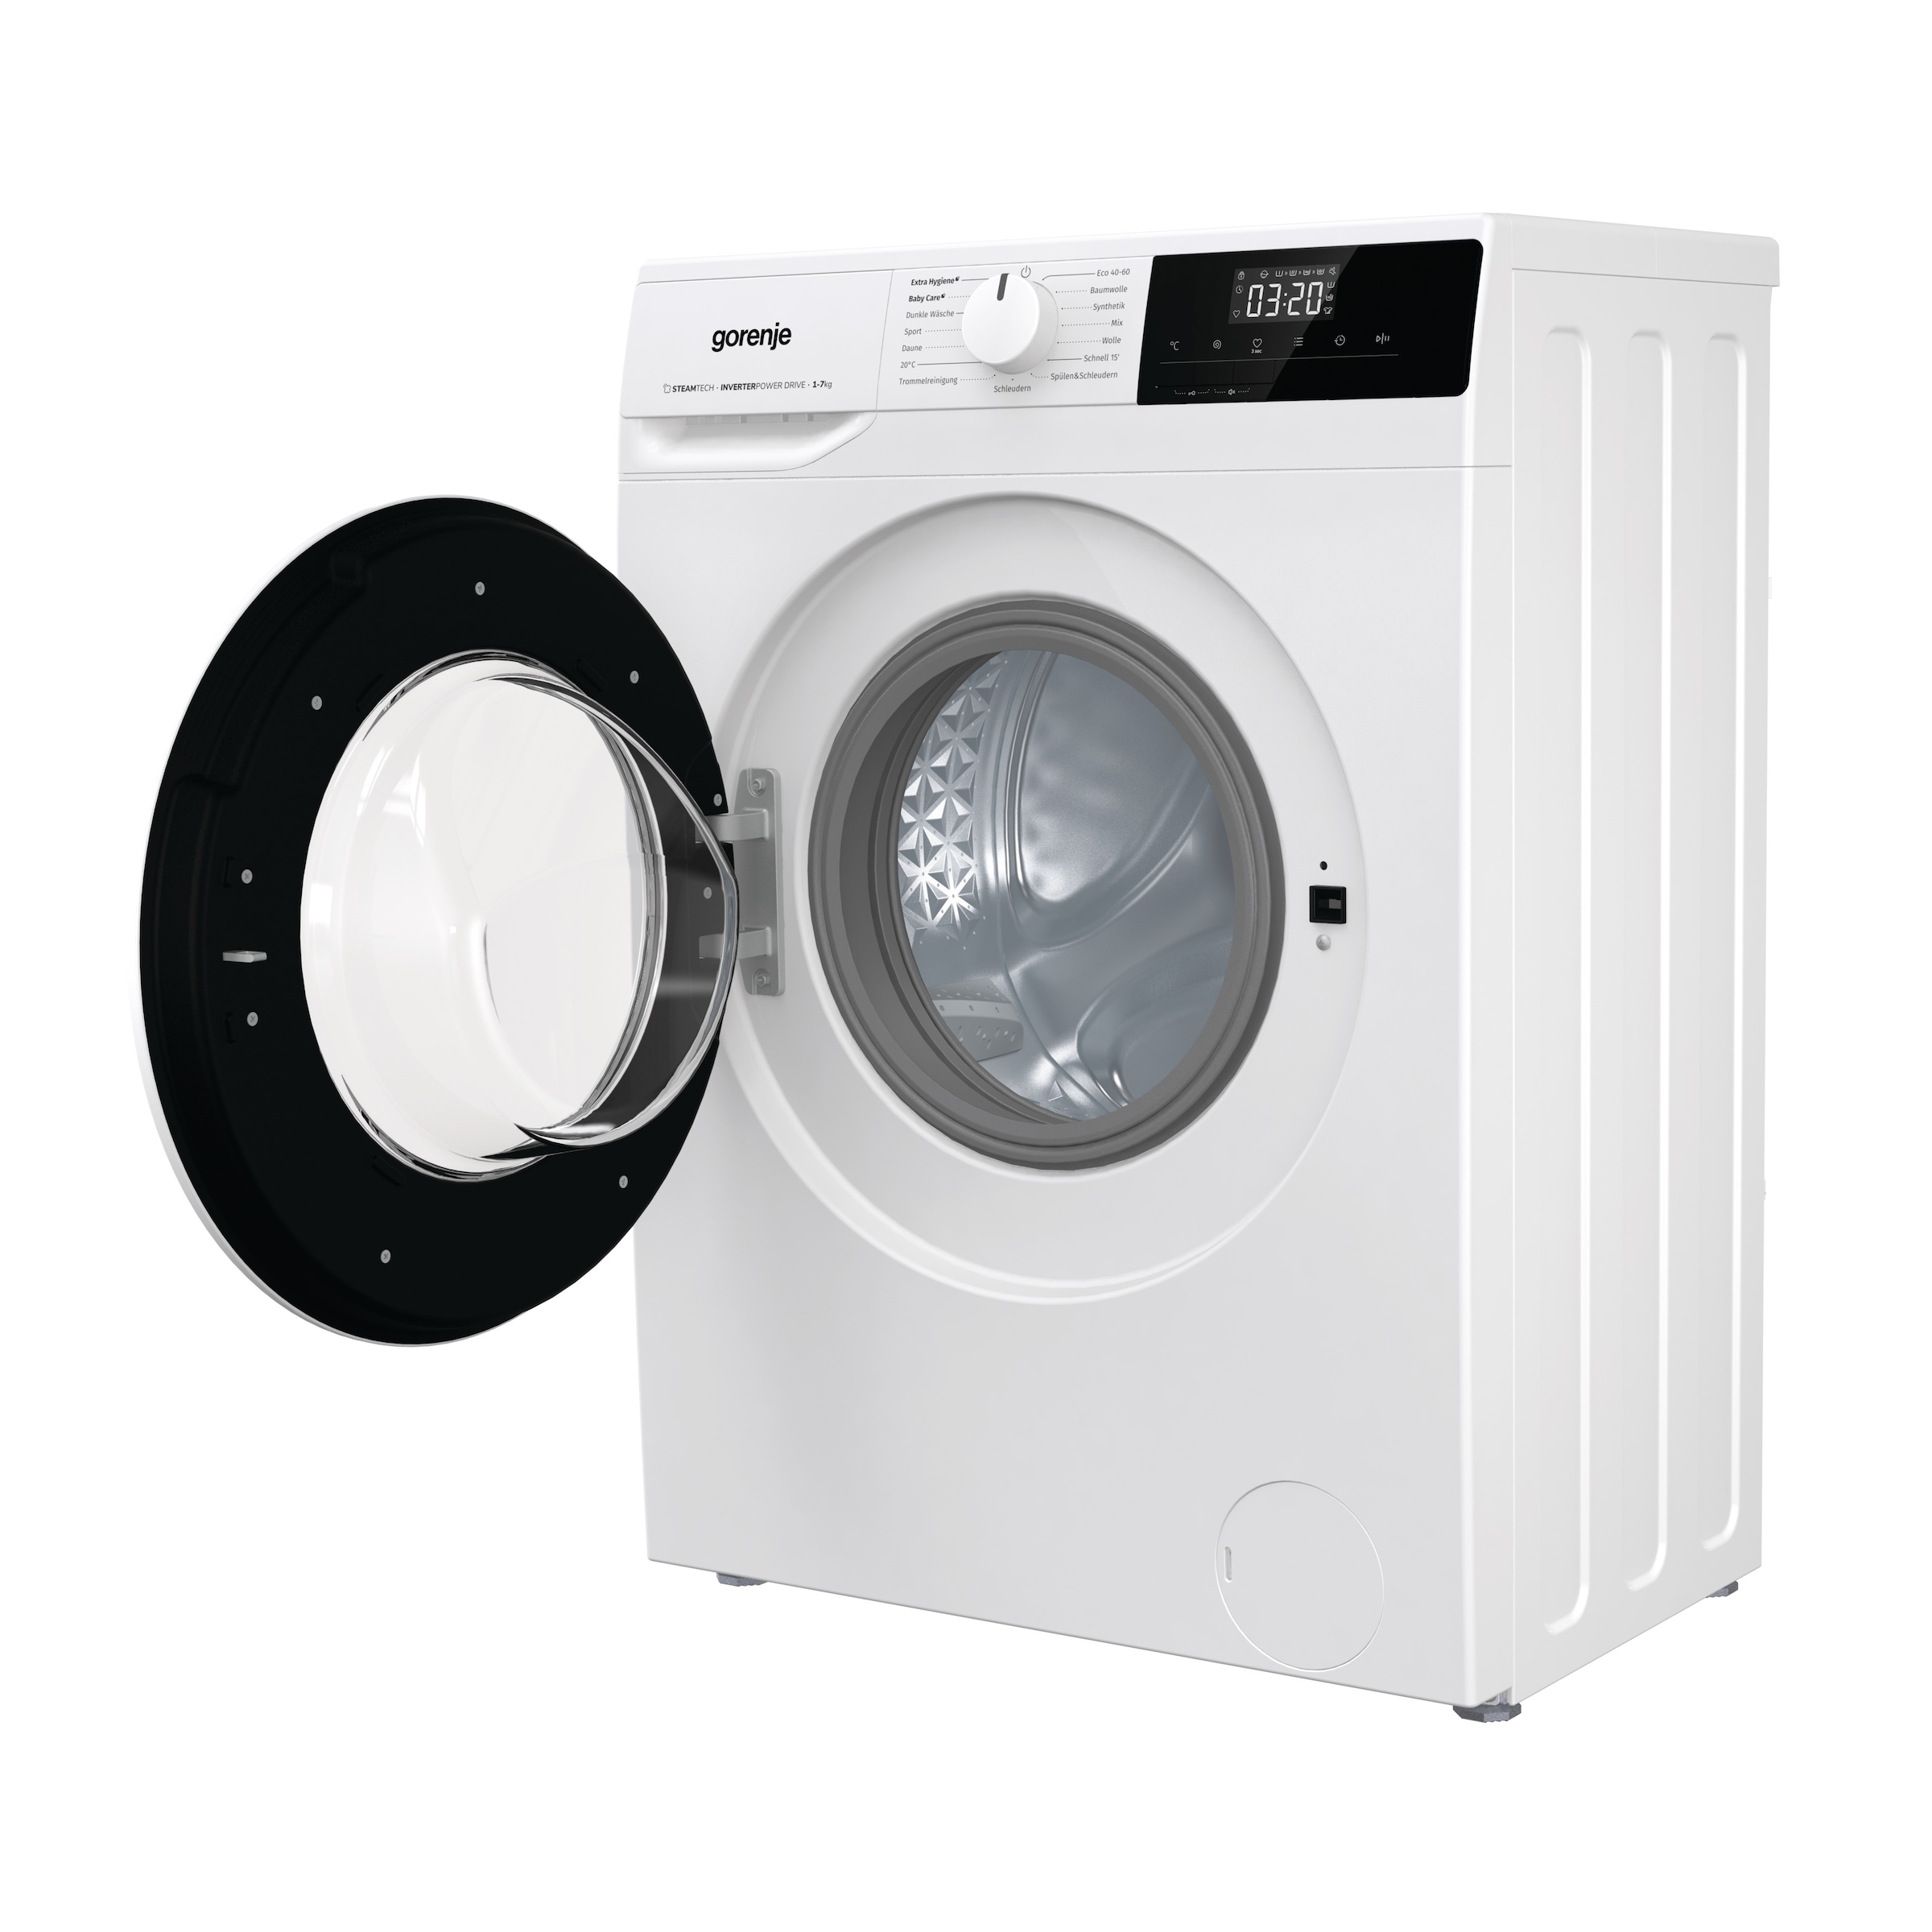 Quick OTTO online 1400 bei WNHPI74SCPS/DE, 7 GORENJE 17´Programm Waschmaschine, jetzt U/min, kg,